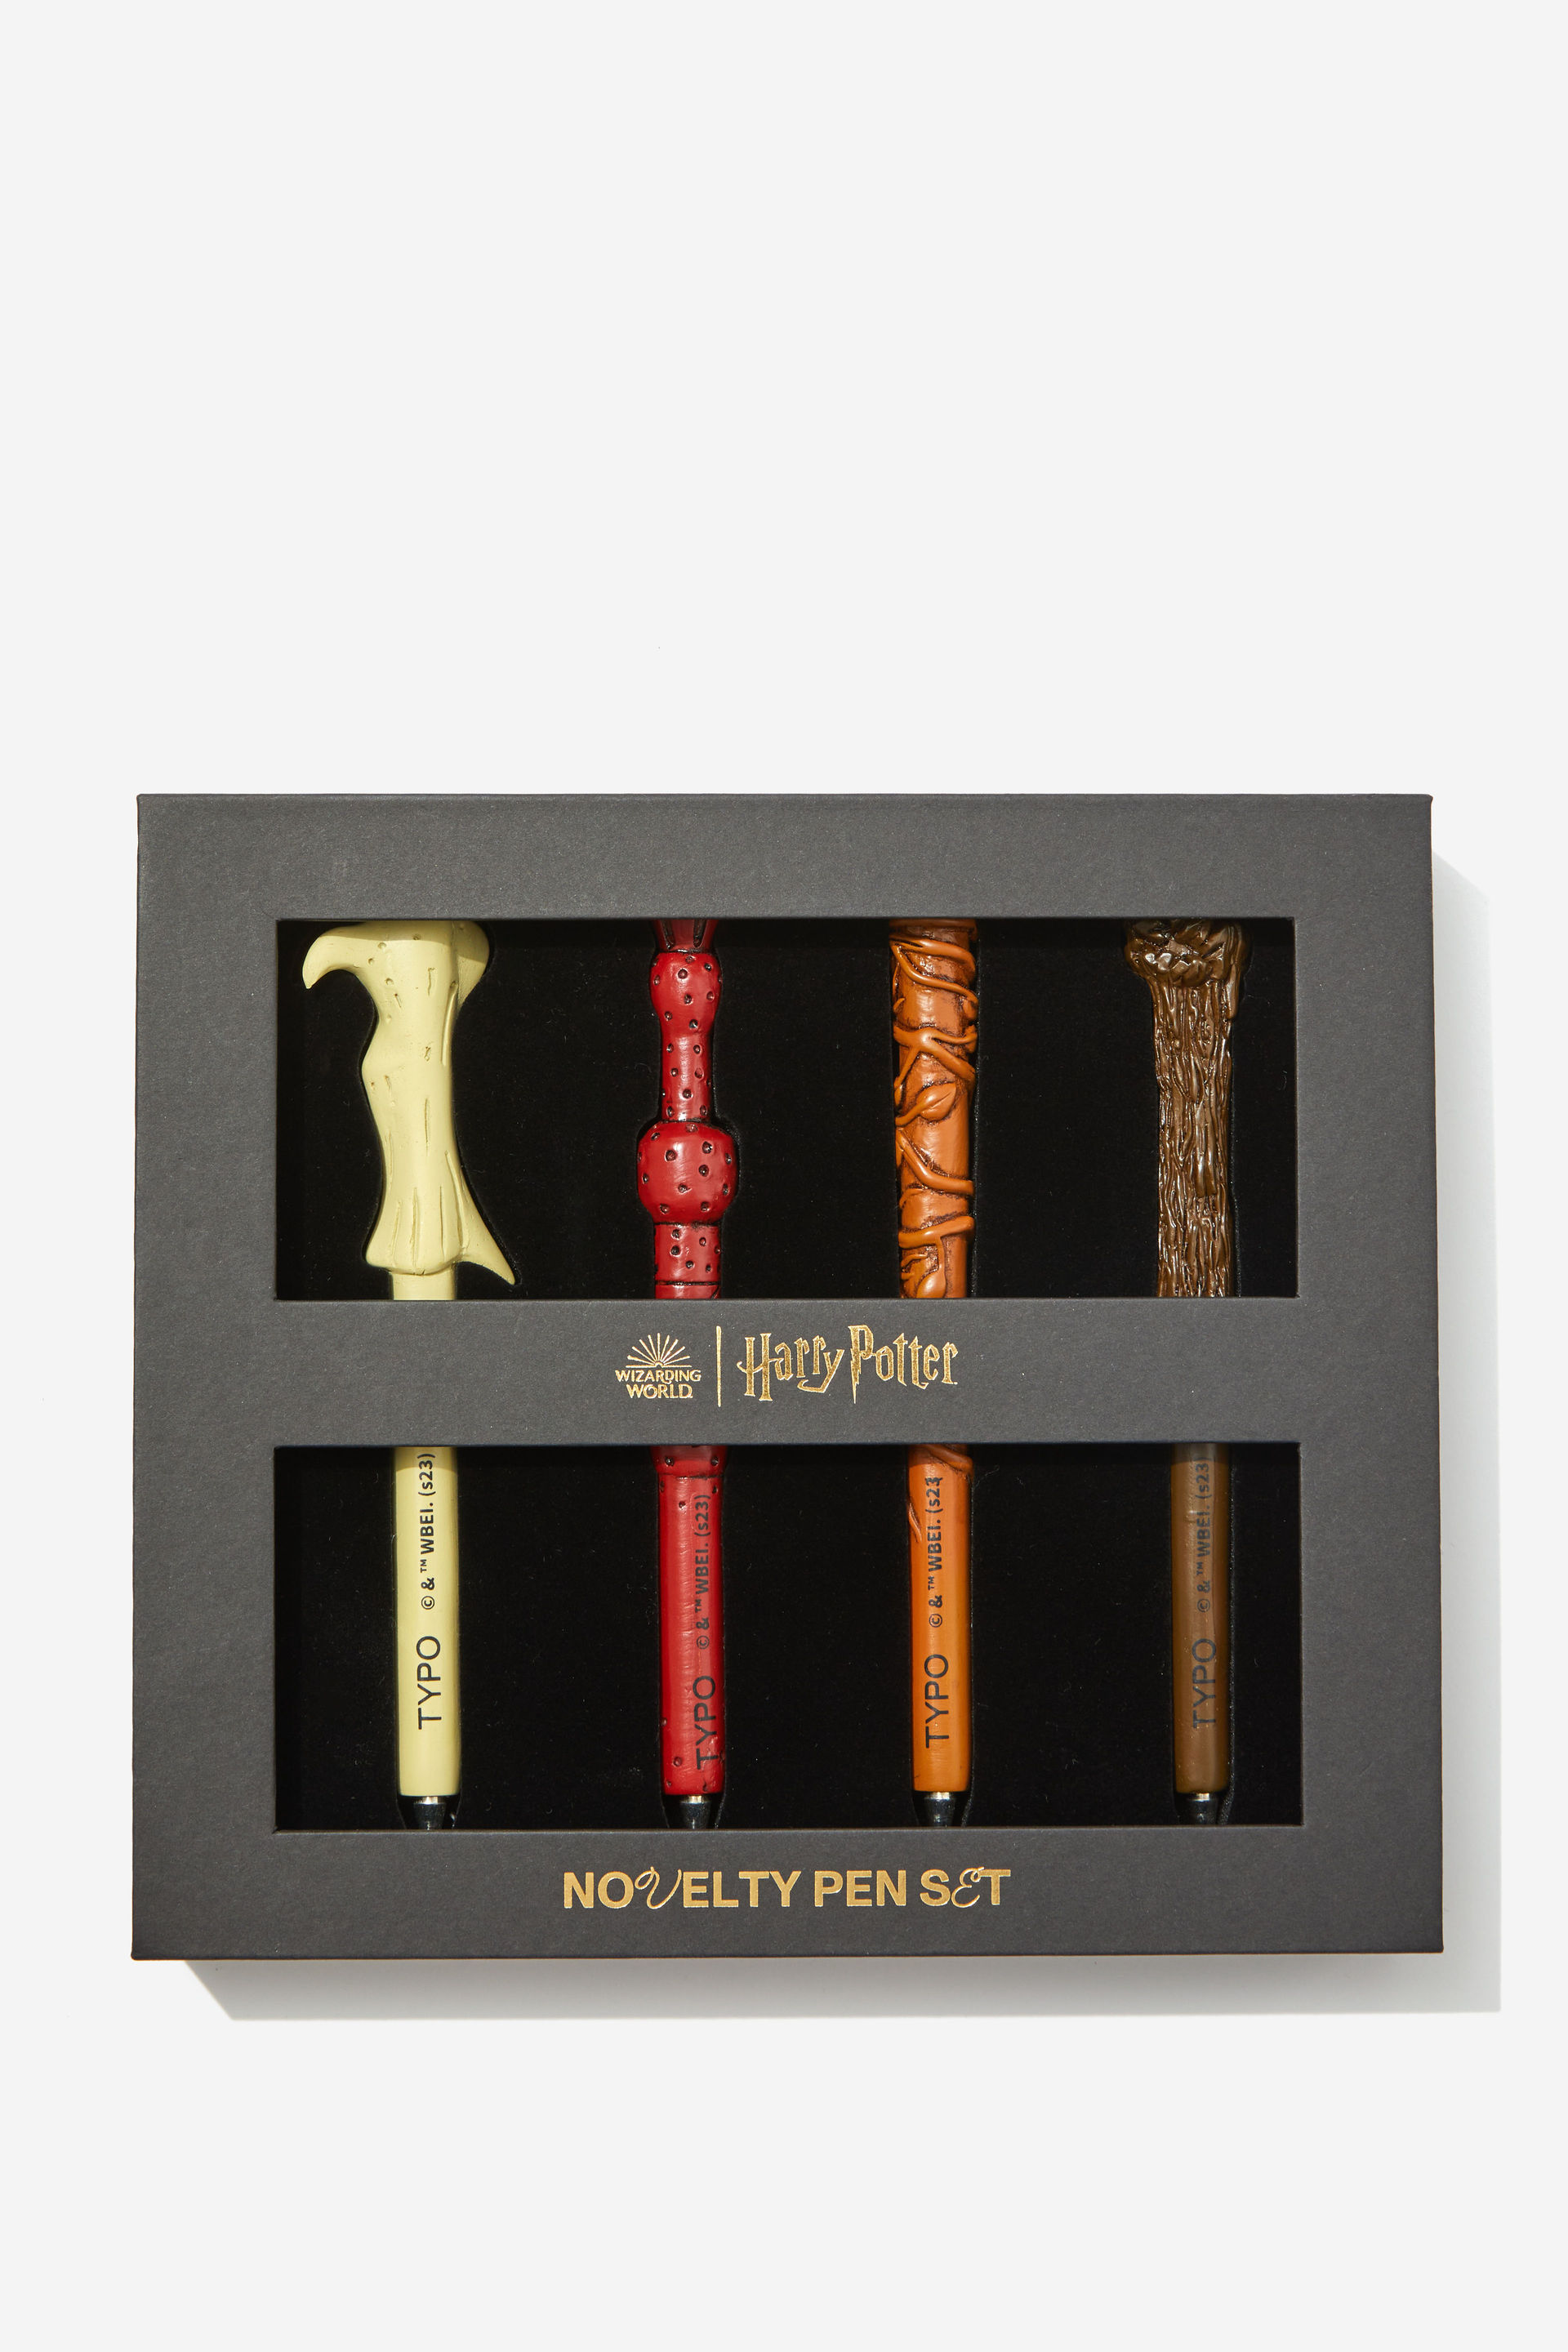 Harry Potter Novelty Pen Set